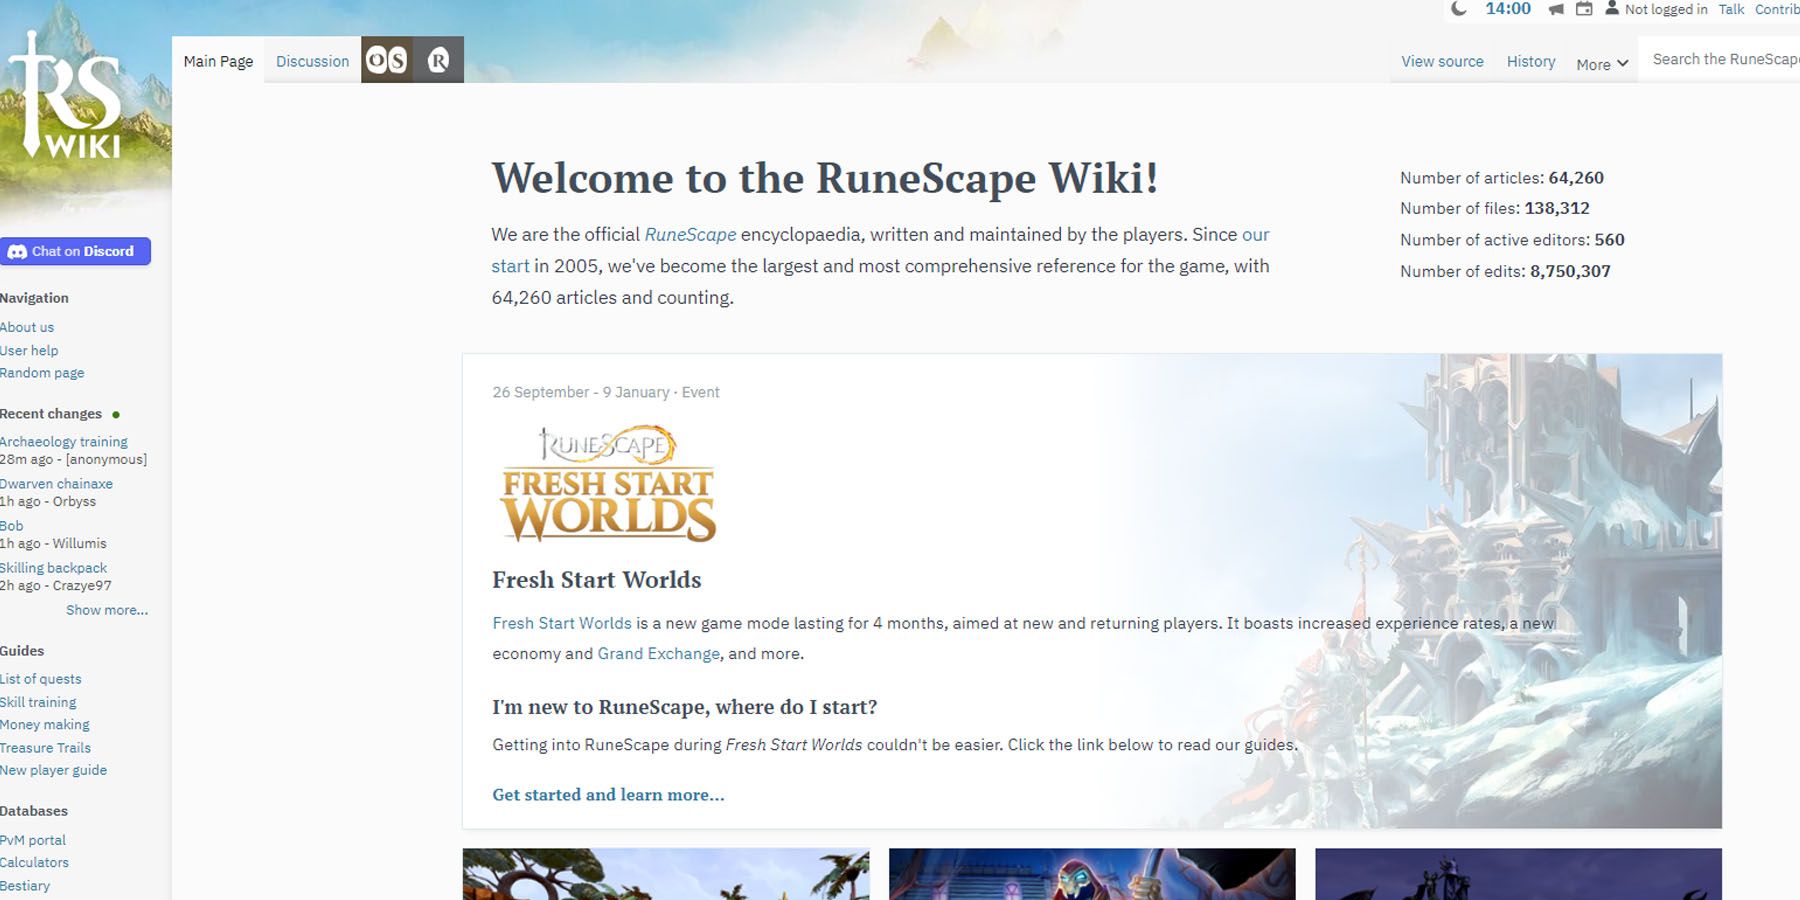 The Runescape Wiki